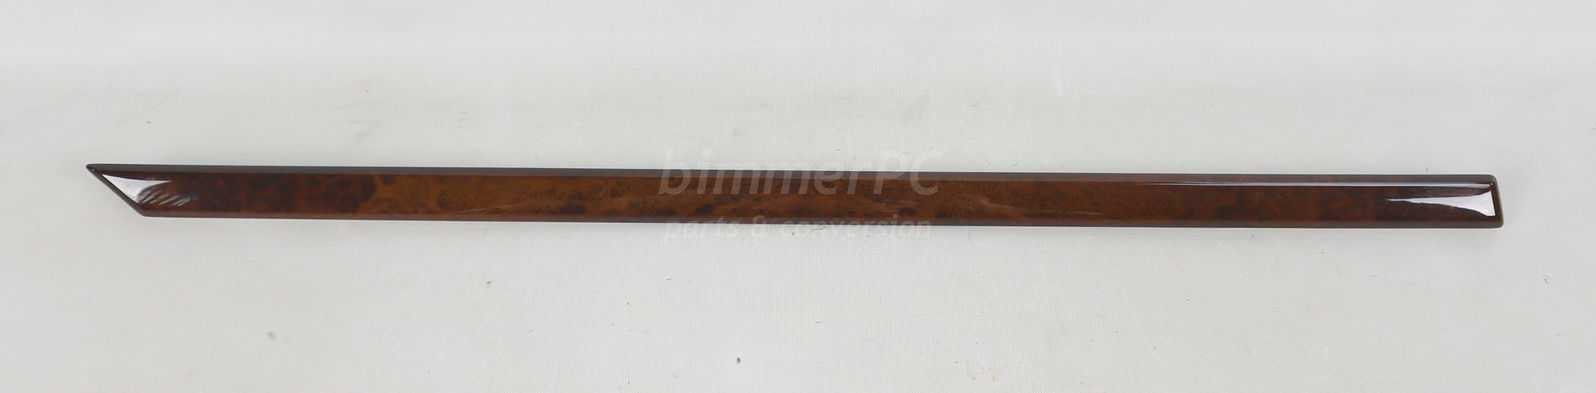 Picture of BMW 51428159657 Left Rear Door Panel Wood Trim Vavona Veneer Strip E39 for sale